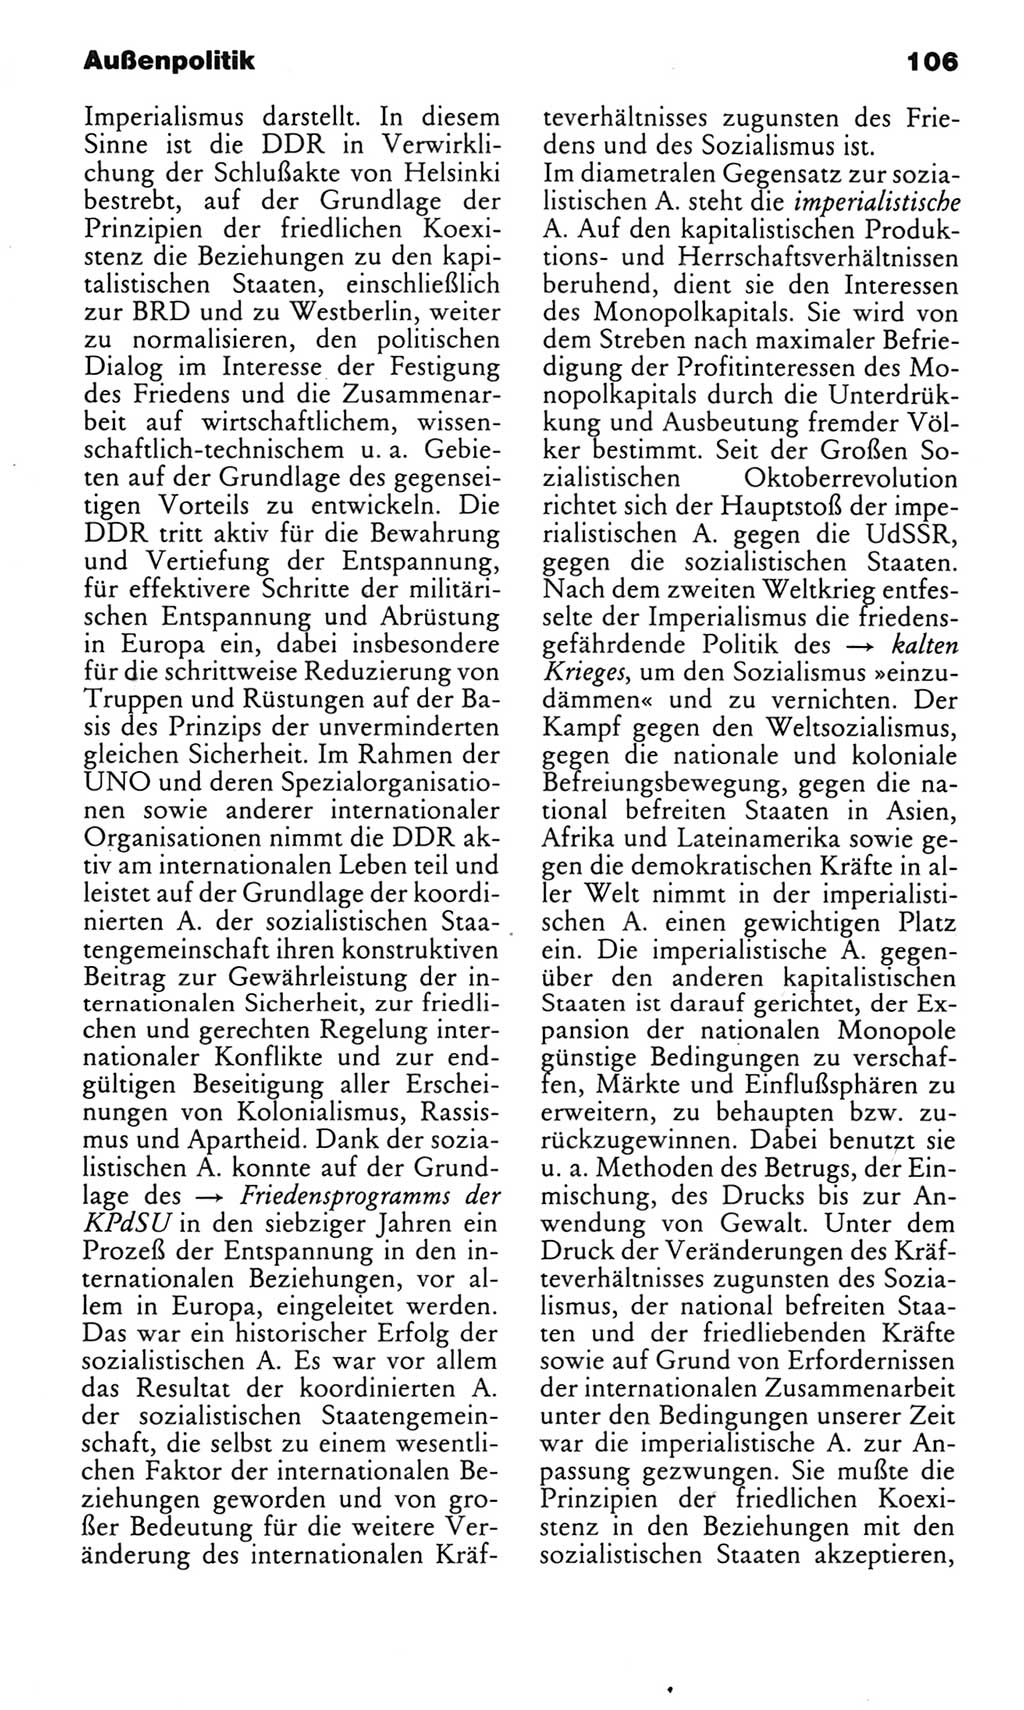 Kleines politisches Wörterbuch [Deutsche Demokratische Republik (DDR)] 1985, Seite 106 (Kl. pol. Wb. DDR 1985, S. 106)